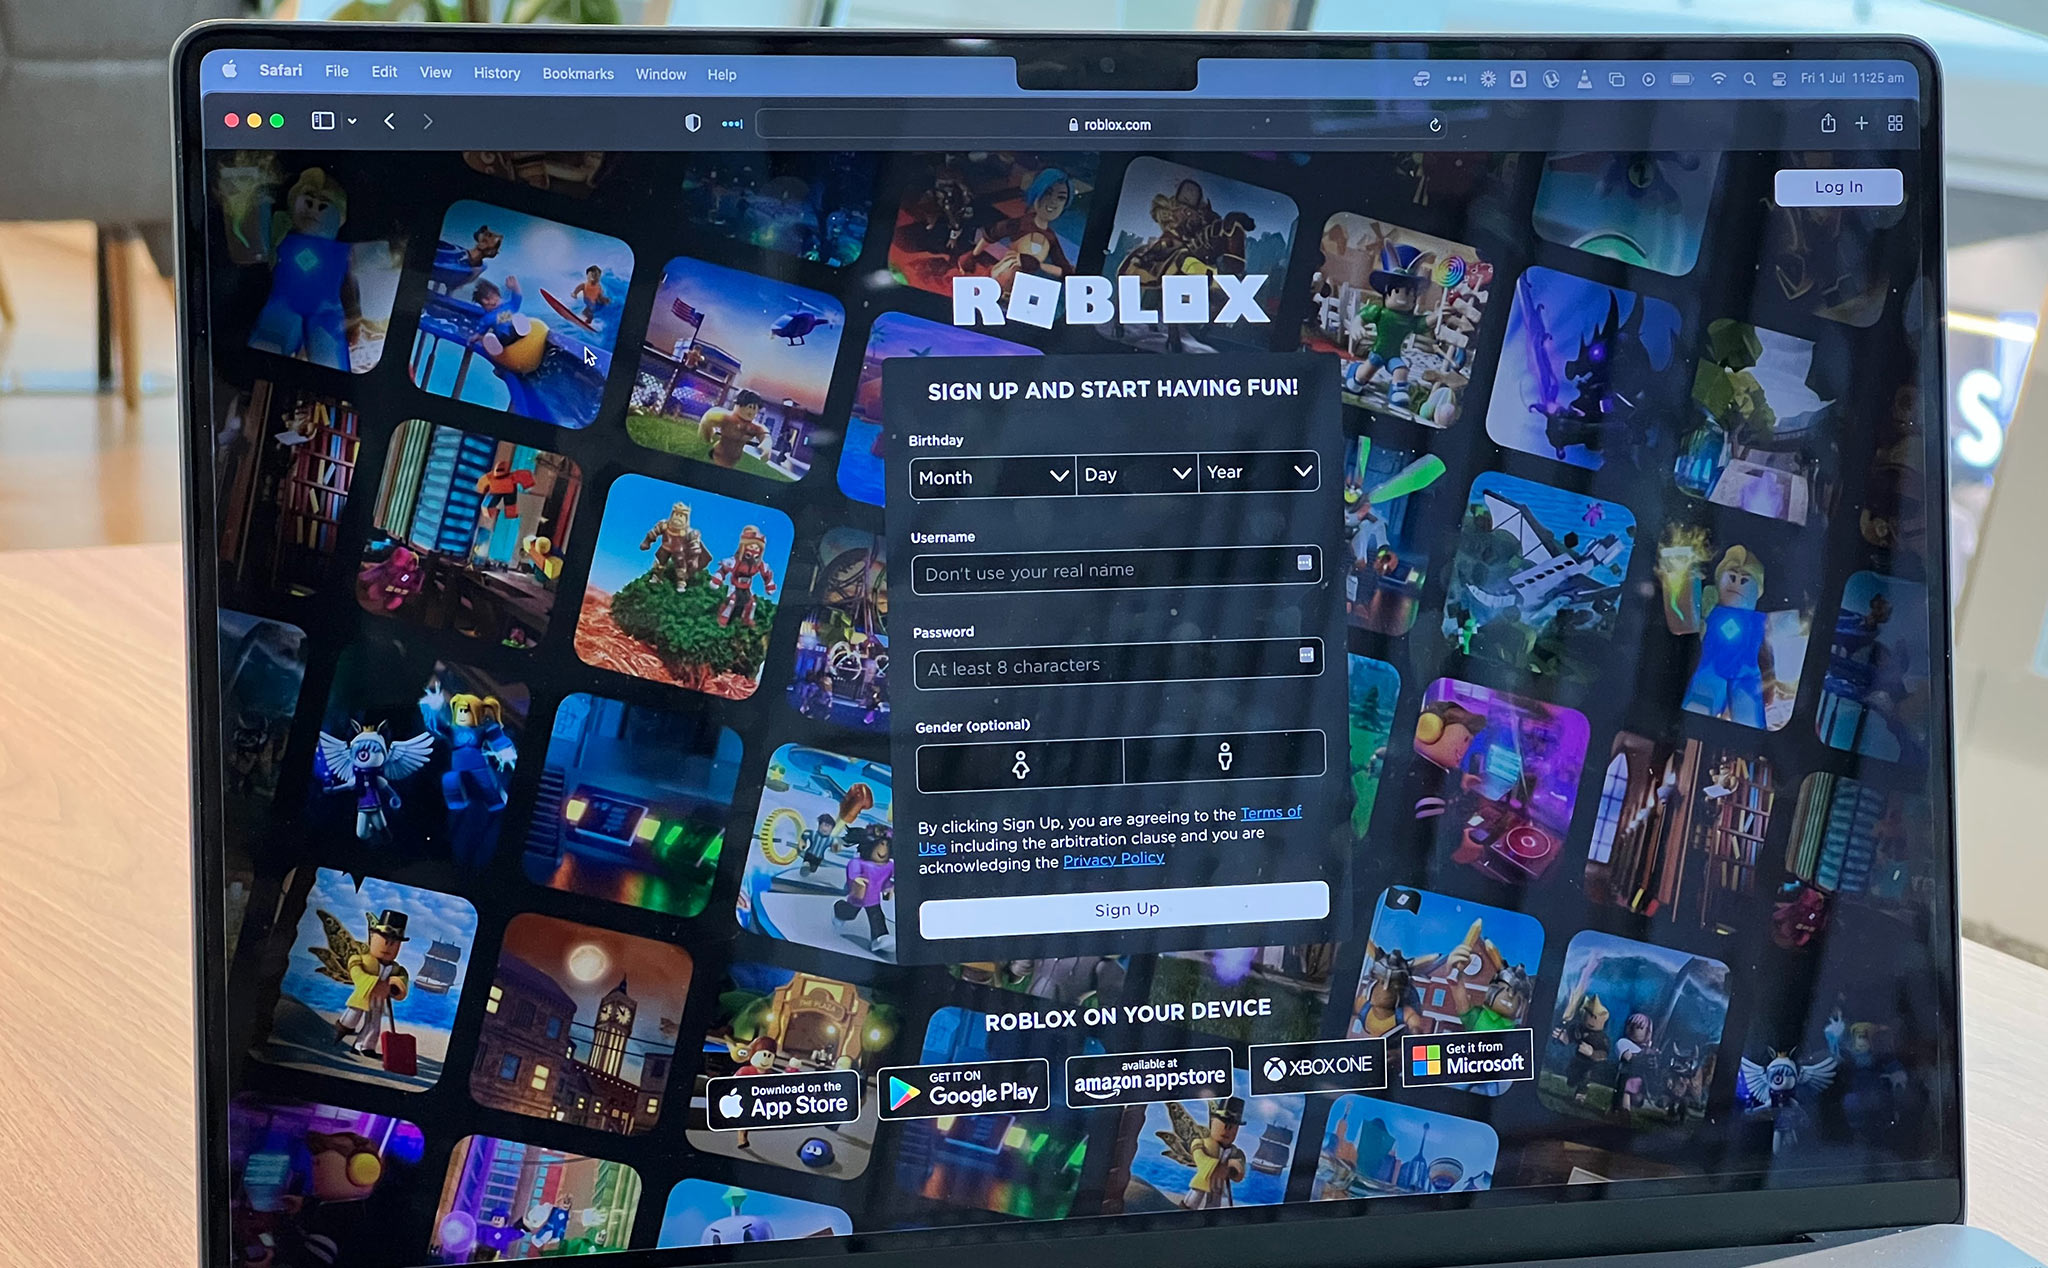 Tài liệu nội bộ của Roblox đã bị hack và đang được đăng tải công khai trên mạng